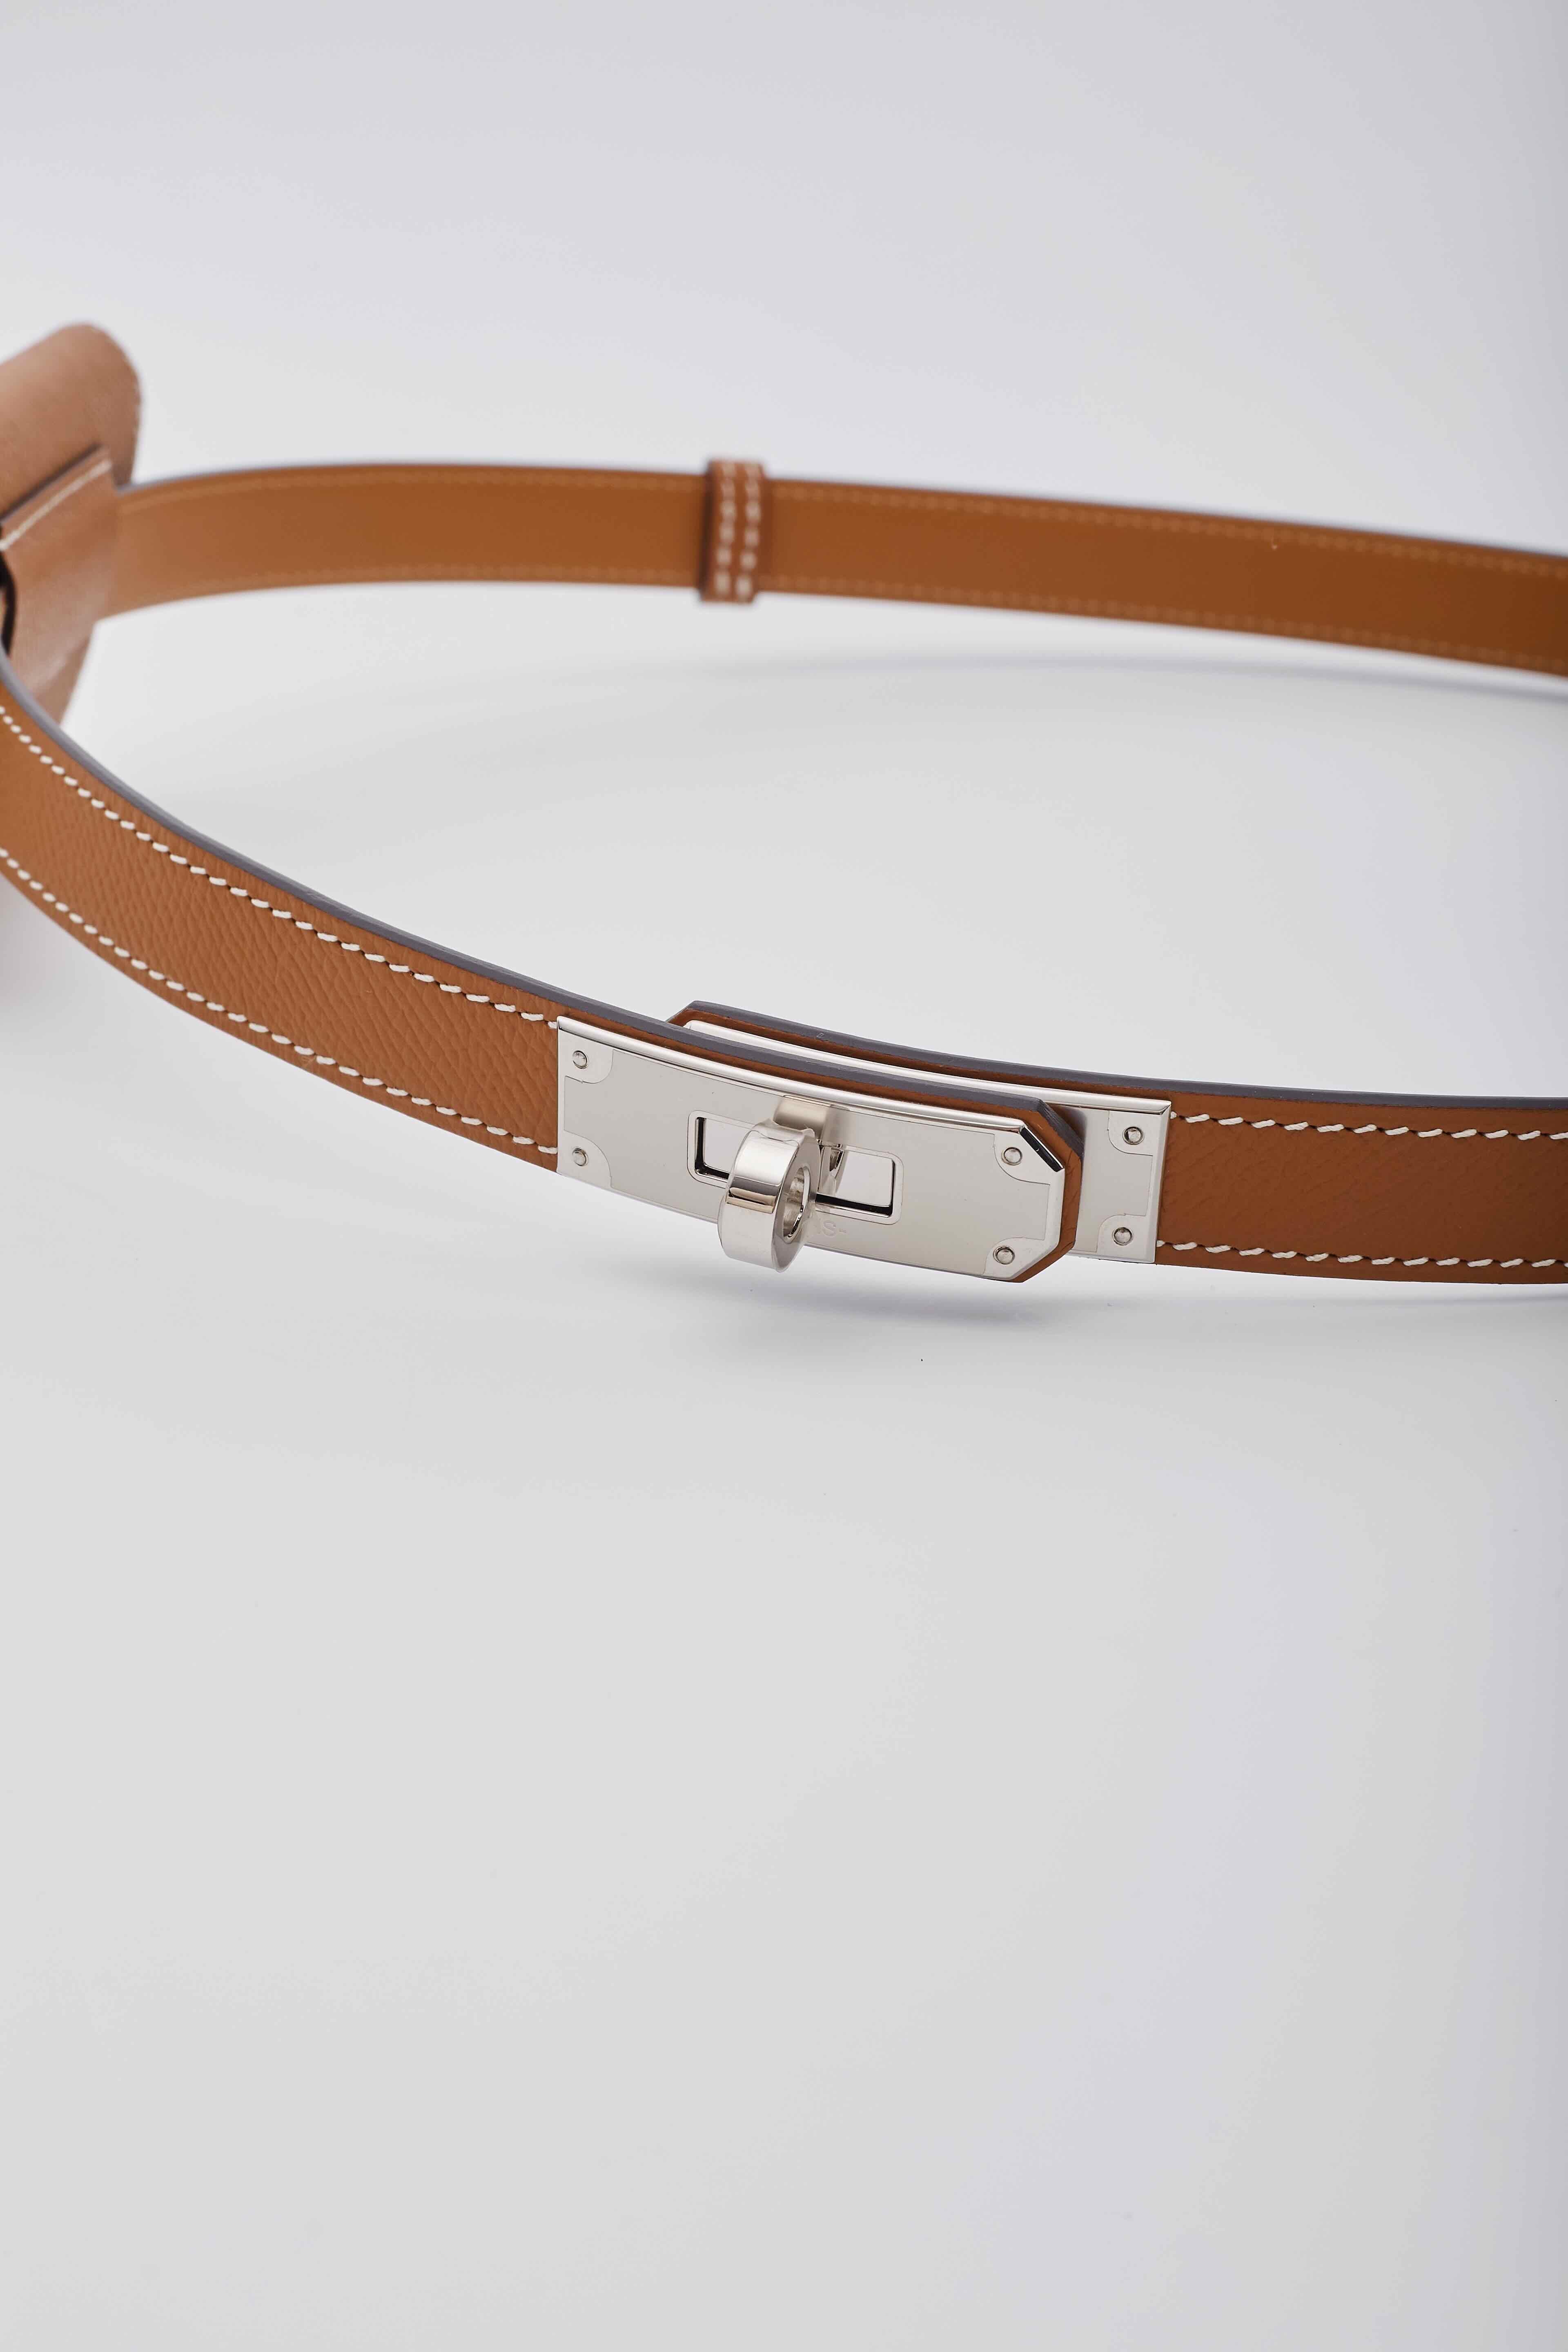 Cette ceinture est réalisée en cuir de veau Epsom de couleur marron doré. Cette ceinture à taille unique est dotée d'un système de glissement discret et peut être portée à la taille ou bas sur les hanches. Elle est sécurisée par un cadenas Kelly